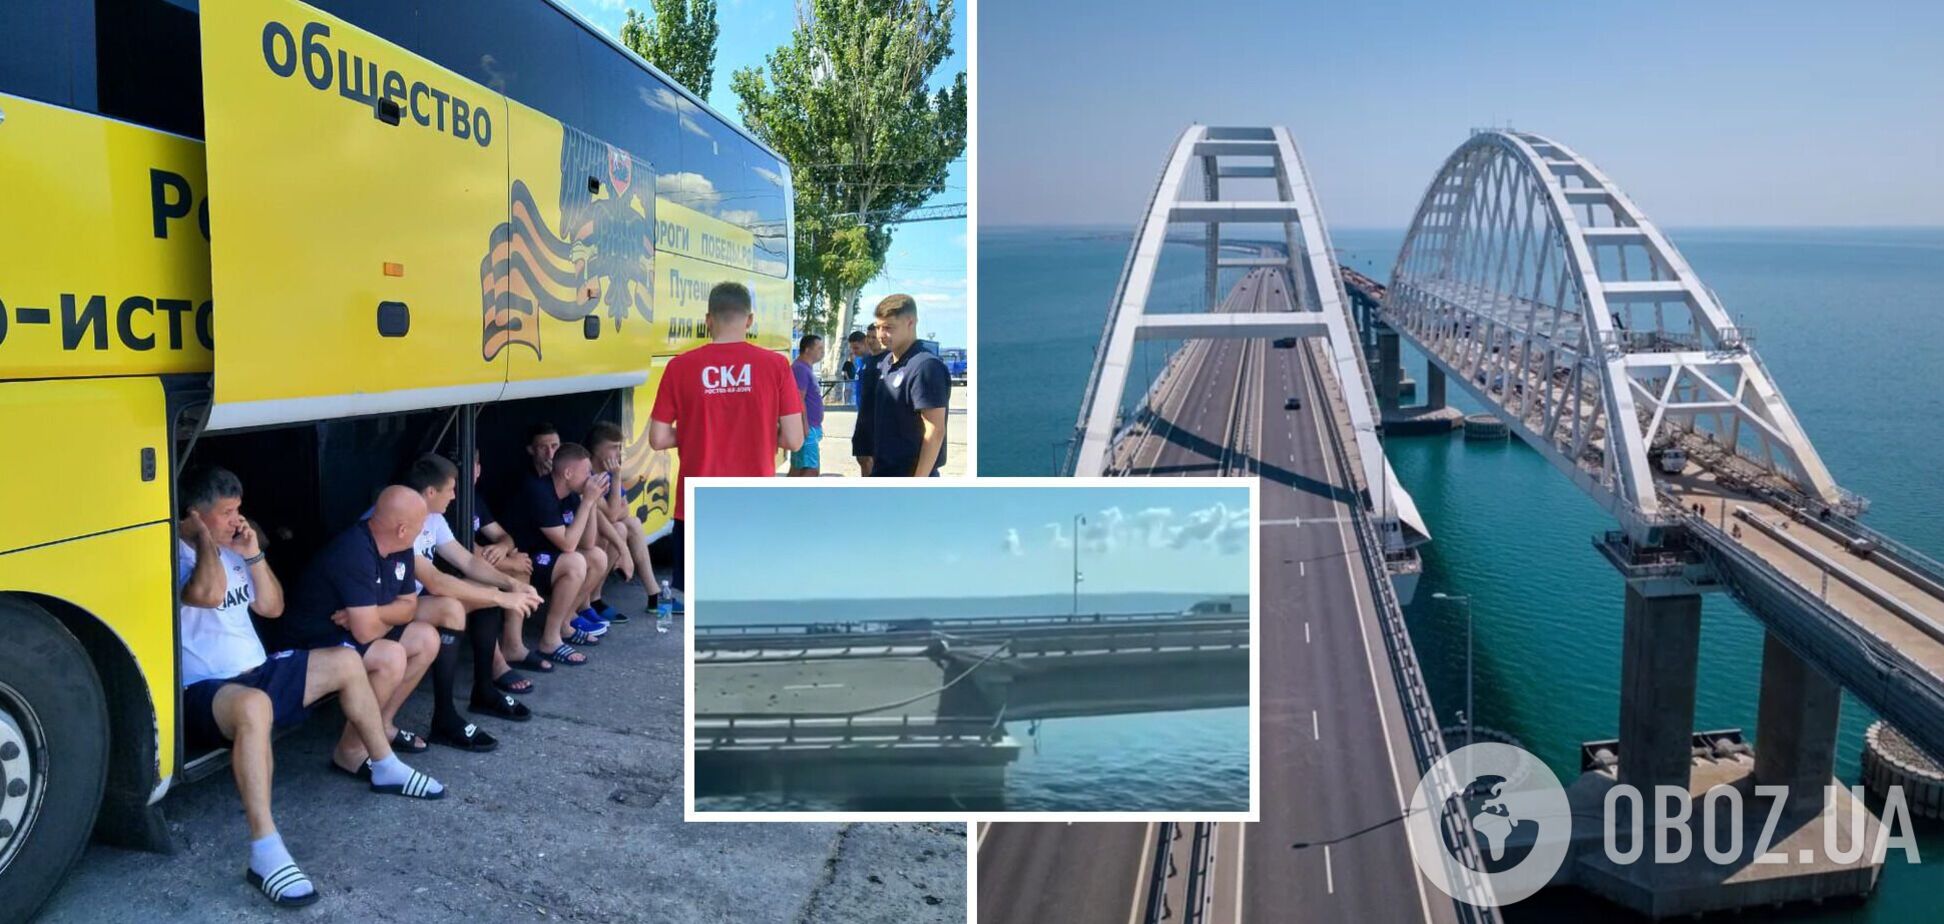 Автобус едва не провалился: российские футболисты попали под атаку на Крымский мост после игры в Севастополе